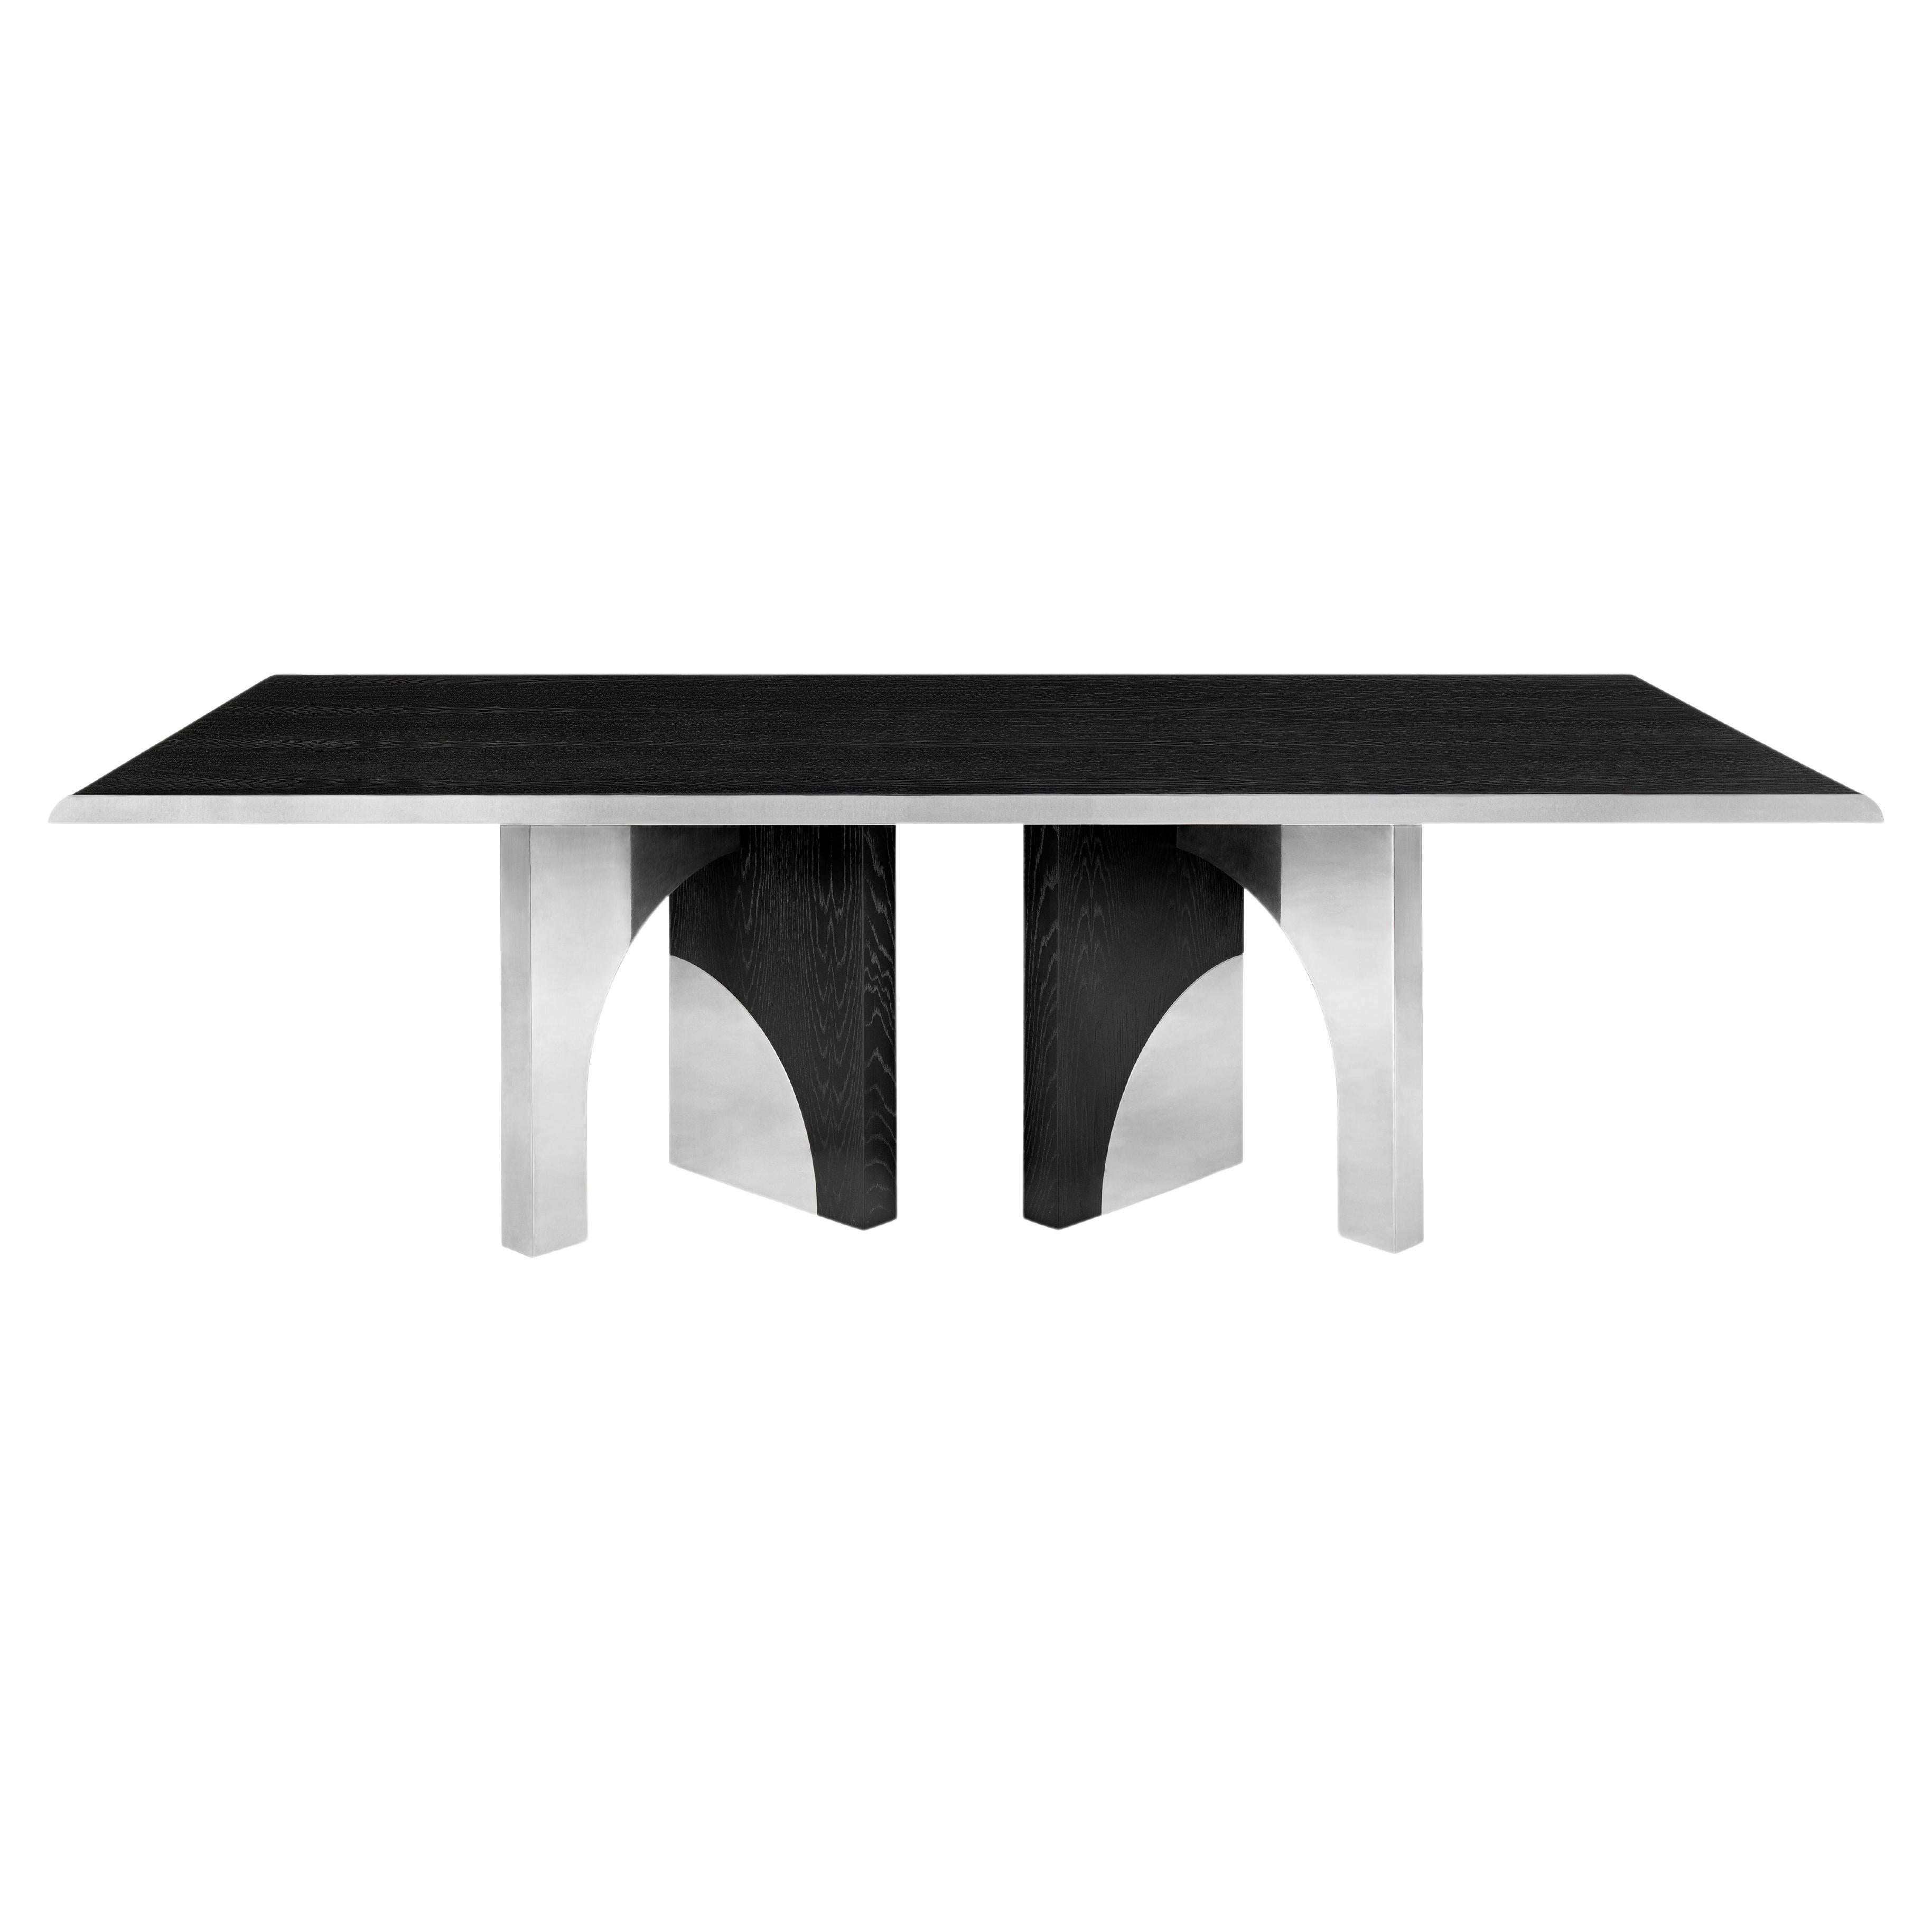 Table de salle à manger Utopia, chêne foncé et acier, InsidherLand de Joana Santos Barbosa